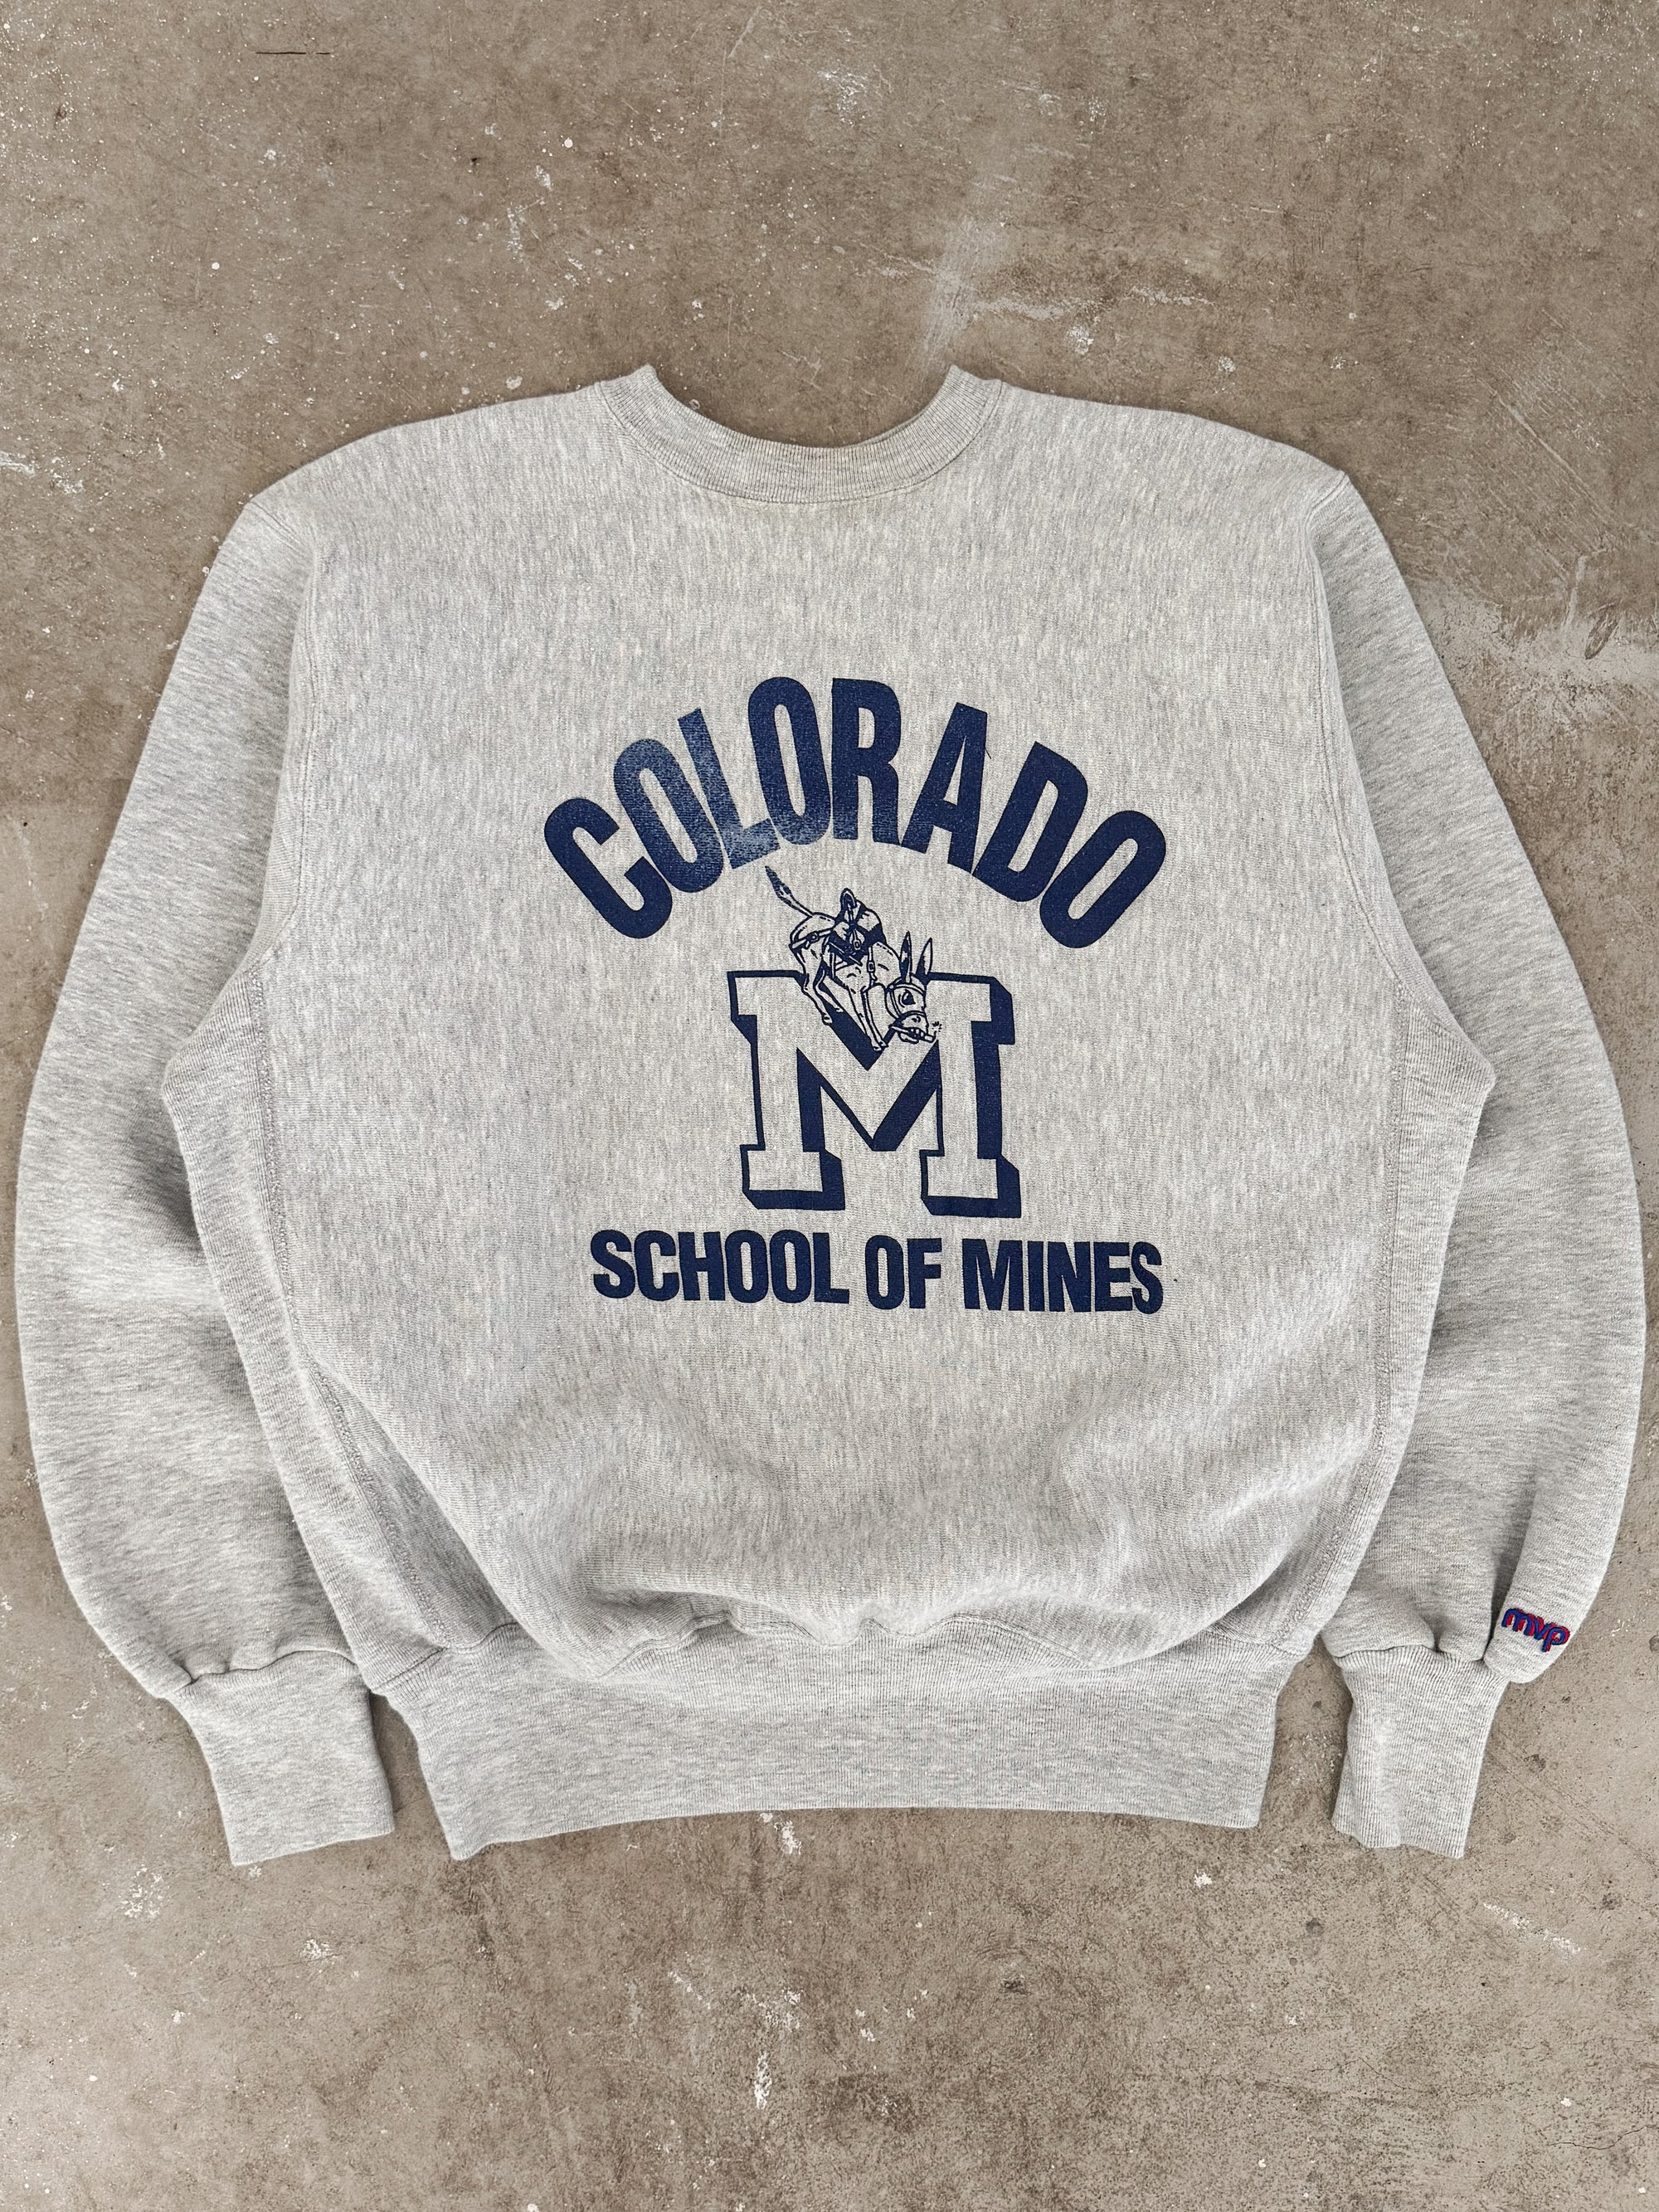 1980s "Colorado School of Mines" Sweatshirt (L)